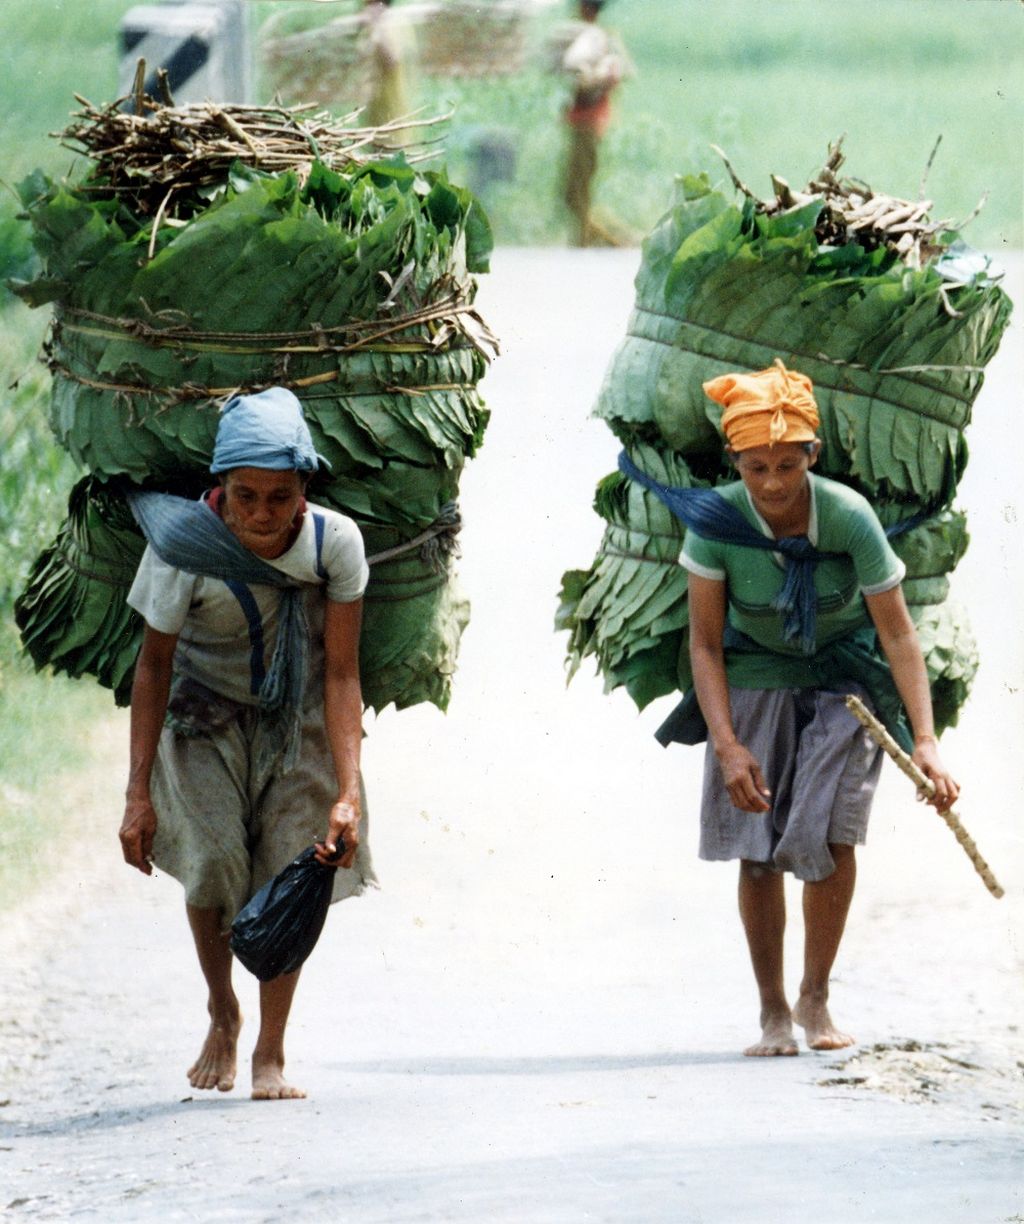 Sekitar 41 persen wilayah Kabupaten Bojonegoro, Jawa Timur atau seluas 50.145, 40 hektar merupakan kawasan hutan yang menghasilkan kayu jati terbaik di Pulau Jawa. Namun kawasan tepi hutan ini, masih merupakan kantung kemiskinan yang kondisi penduduknya masih berada di bawah garis kemiskinan. Dua wanita pencari daun jati di wilayah Kecamatan Malo ini misalnya, setiap hari harus menempuh perjalanan sekitar 15 km untuk memperoleh nafkah sebesar Rp 1.500 dari hasil penjualan daun jati yang mereka jual di pasar sebagai pembungkus (17/7/1993).